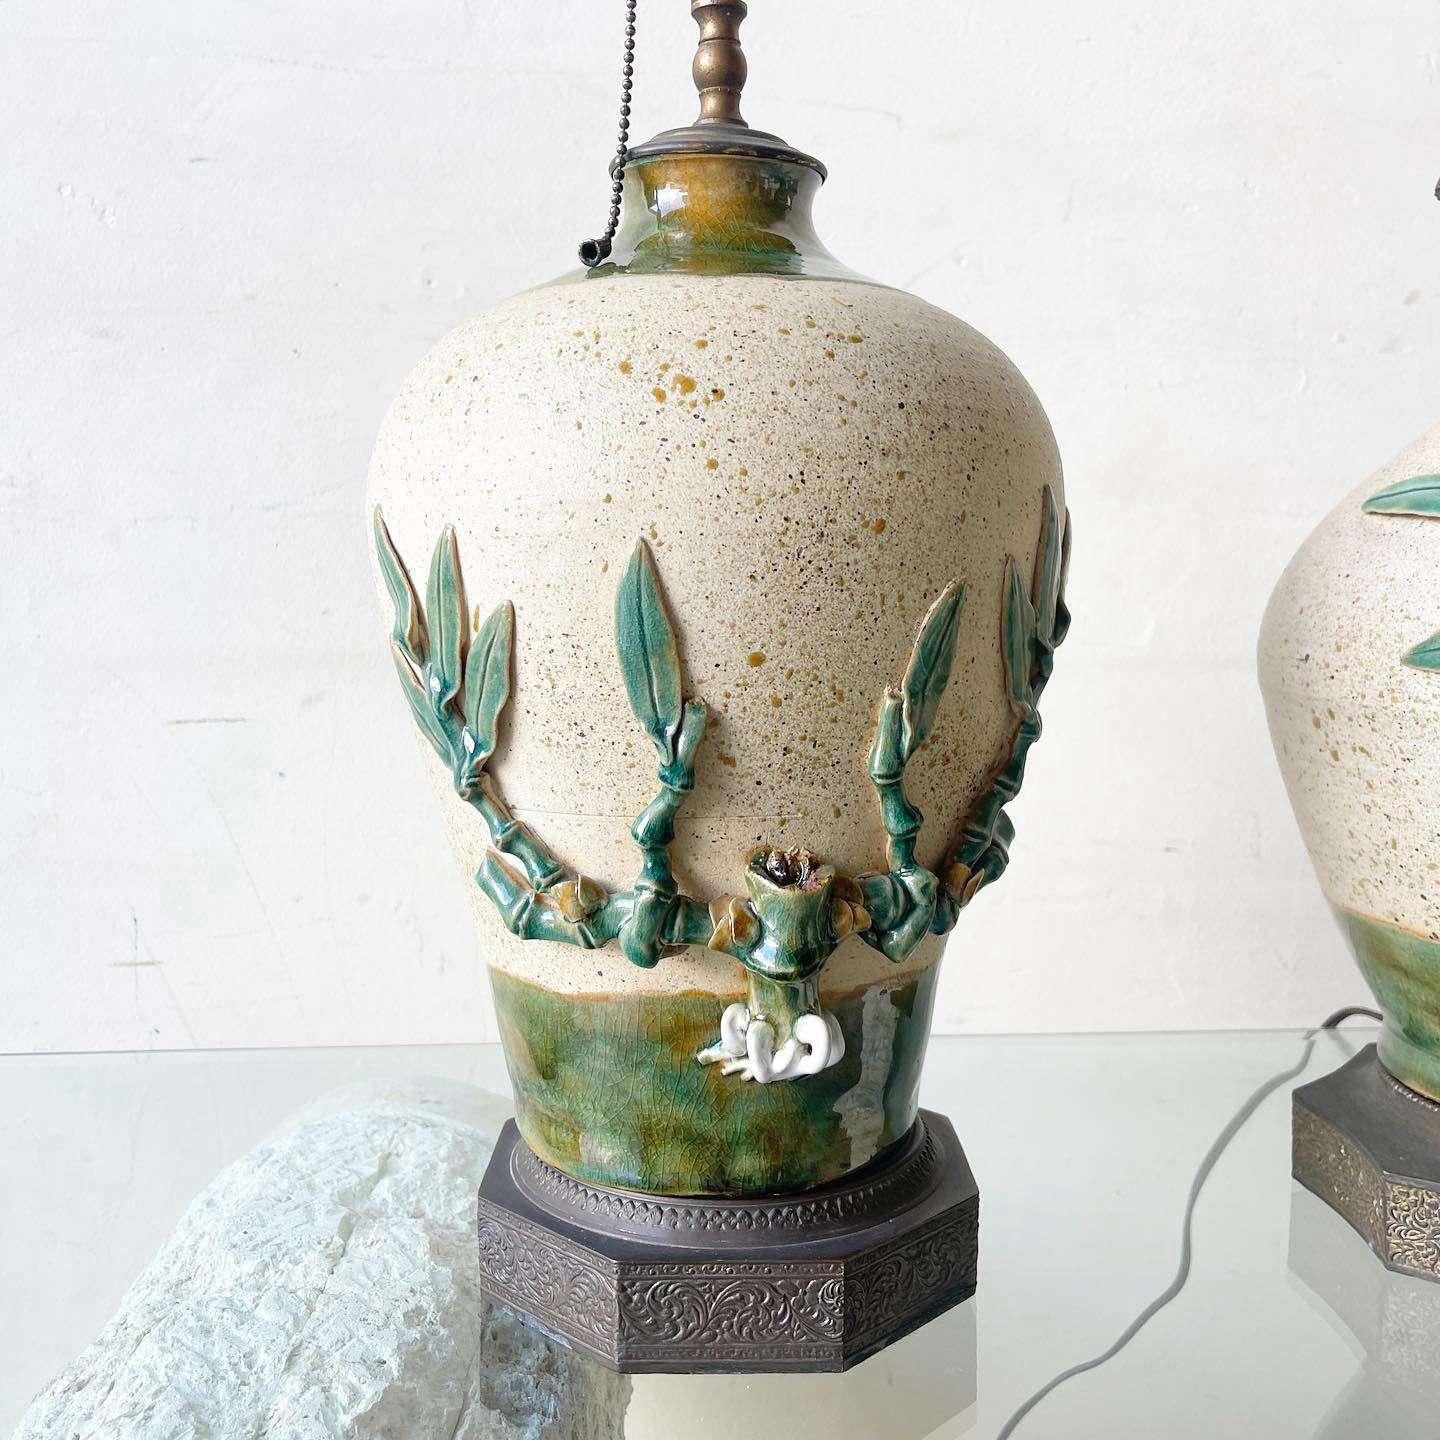 Erstaunlich Paar Vintage Keramik Tischlampen mit Messing und Tops. Jedes Stück ist mit einer handbemalten und skulptierten Bambuspflanze versehen, die an den Seiten wächst. Eine der Lampen zeigt einen Vogel.
